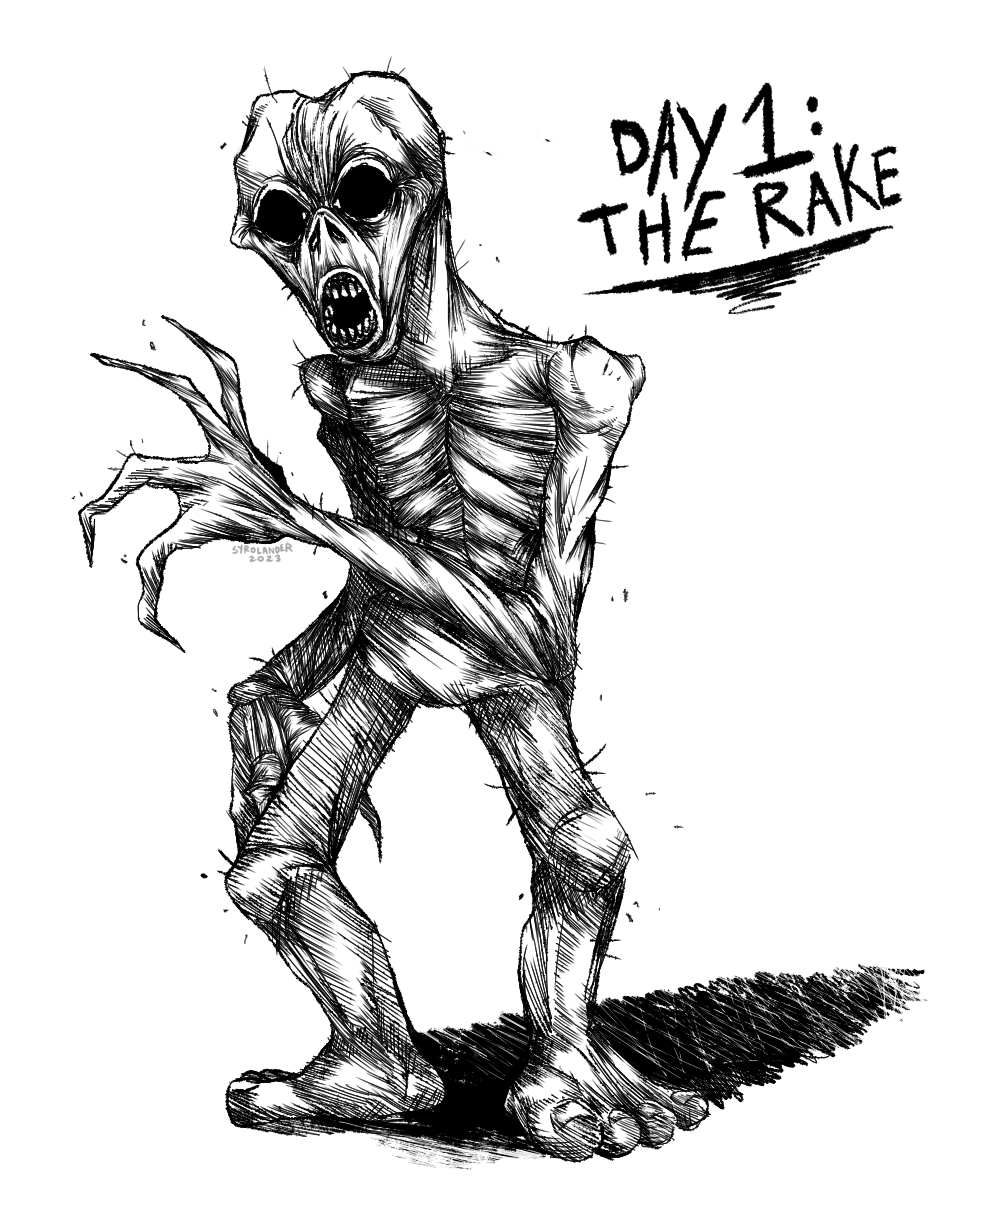 His name is The Rake” (Creepypasta Drawing)